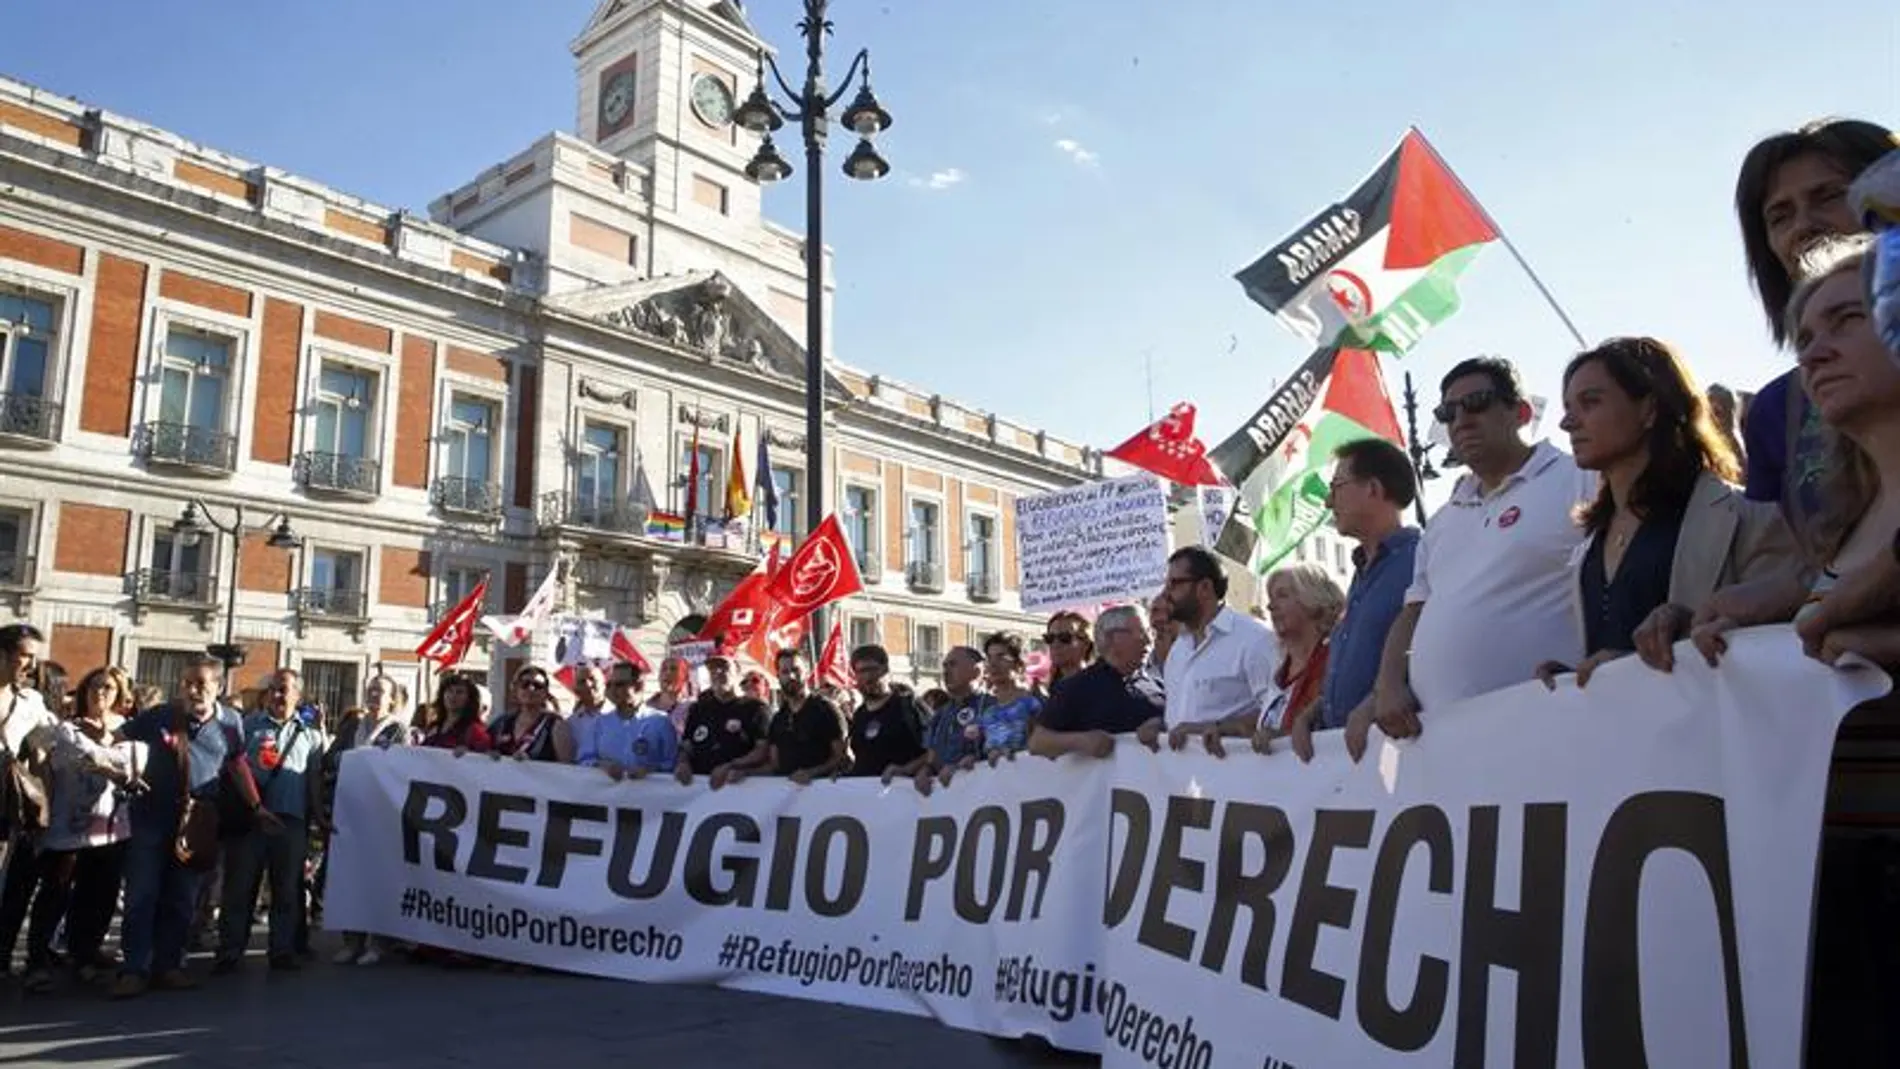 Llegada a la Puerta del Sol de la cabecera de la manifestación por los derechos de los refugiados